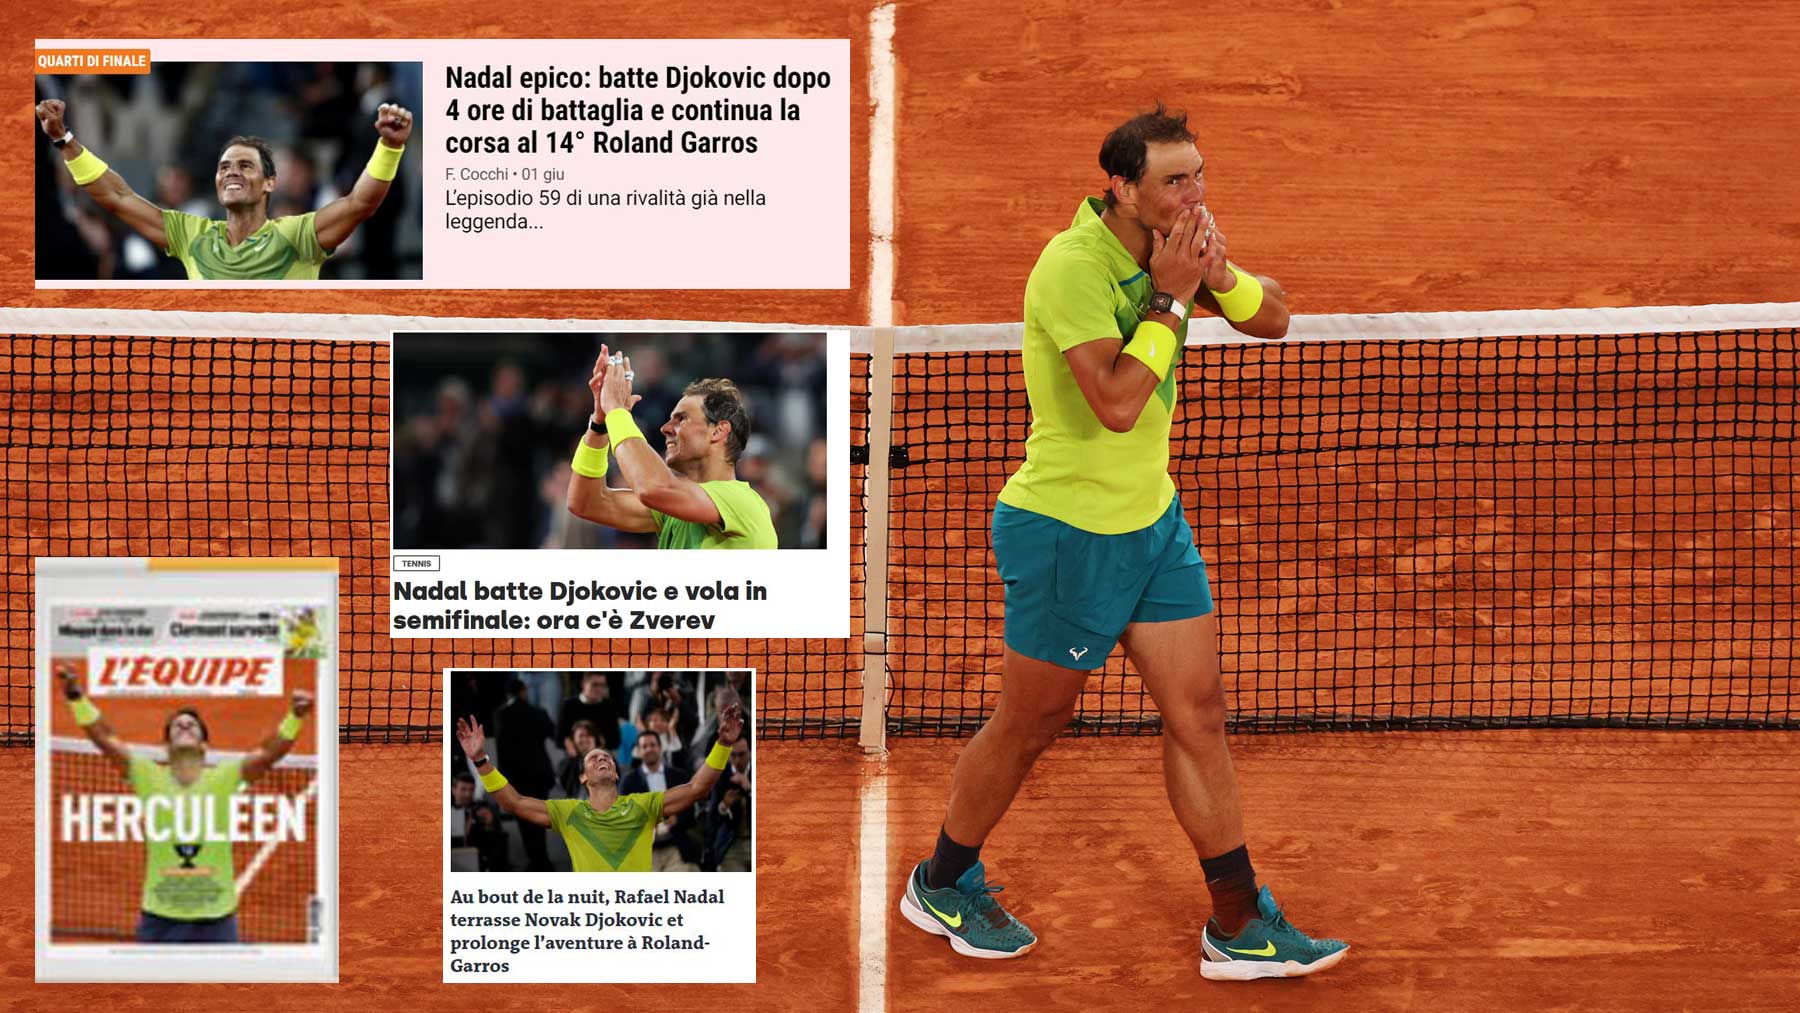 Nadal avanzó a semifinales de Roland Garros tras ganar a Djokovic (Getty)